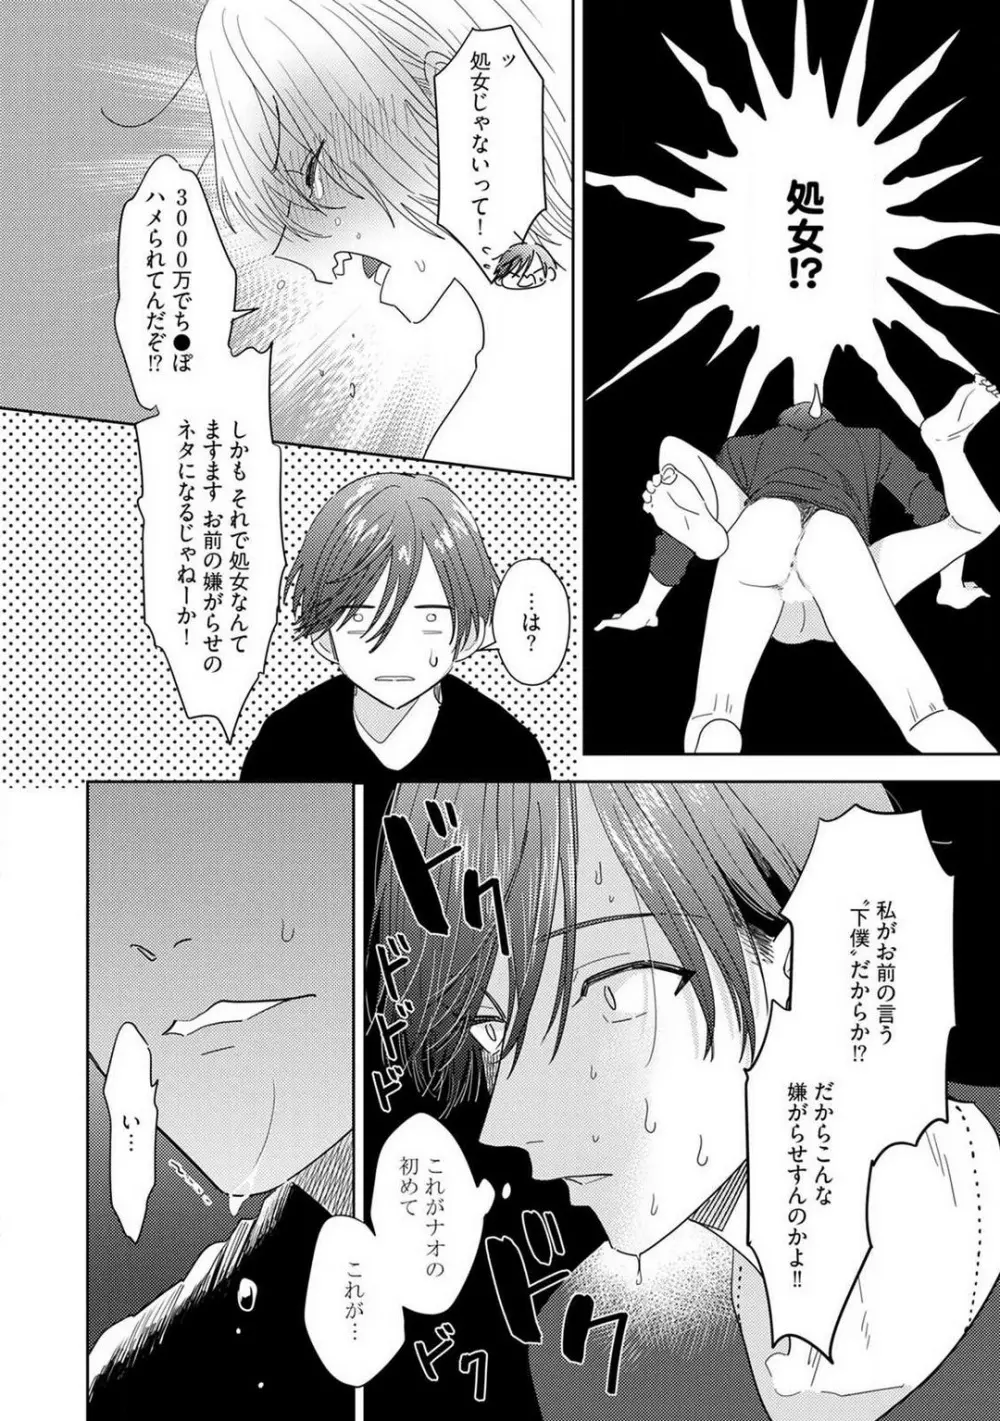 御曹司とヤンキー女のこじらせ恋 1-6 29ページ